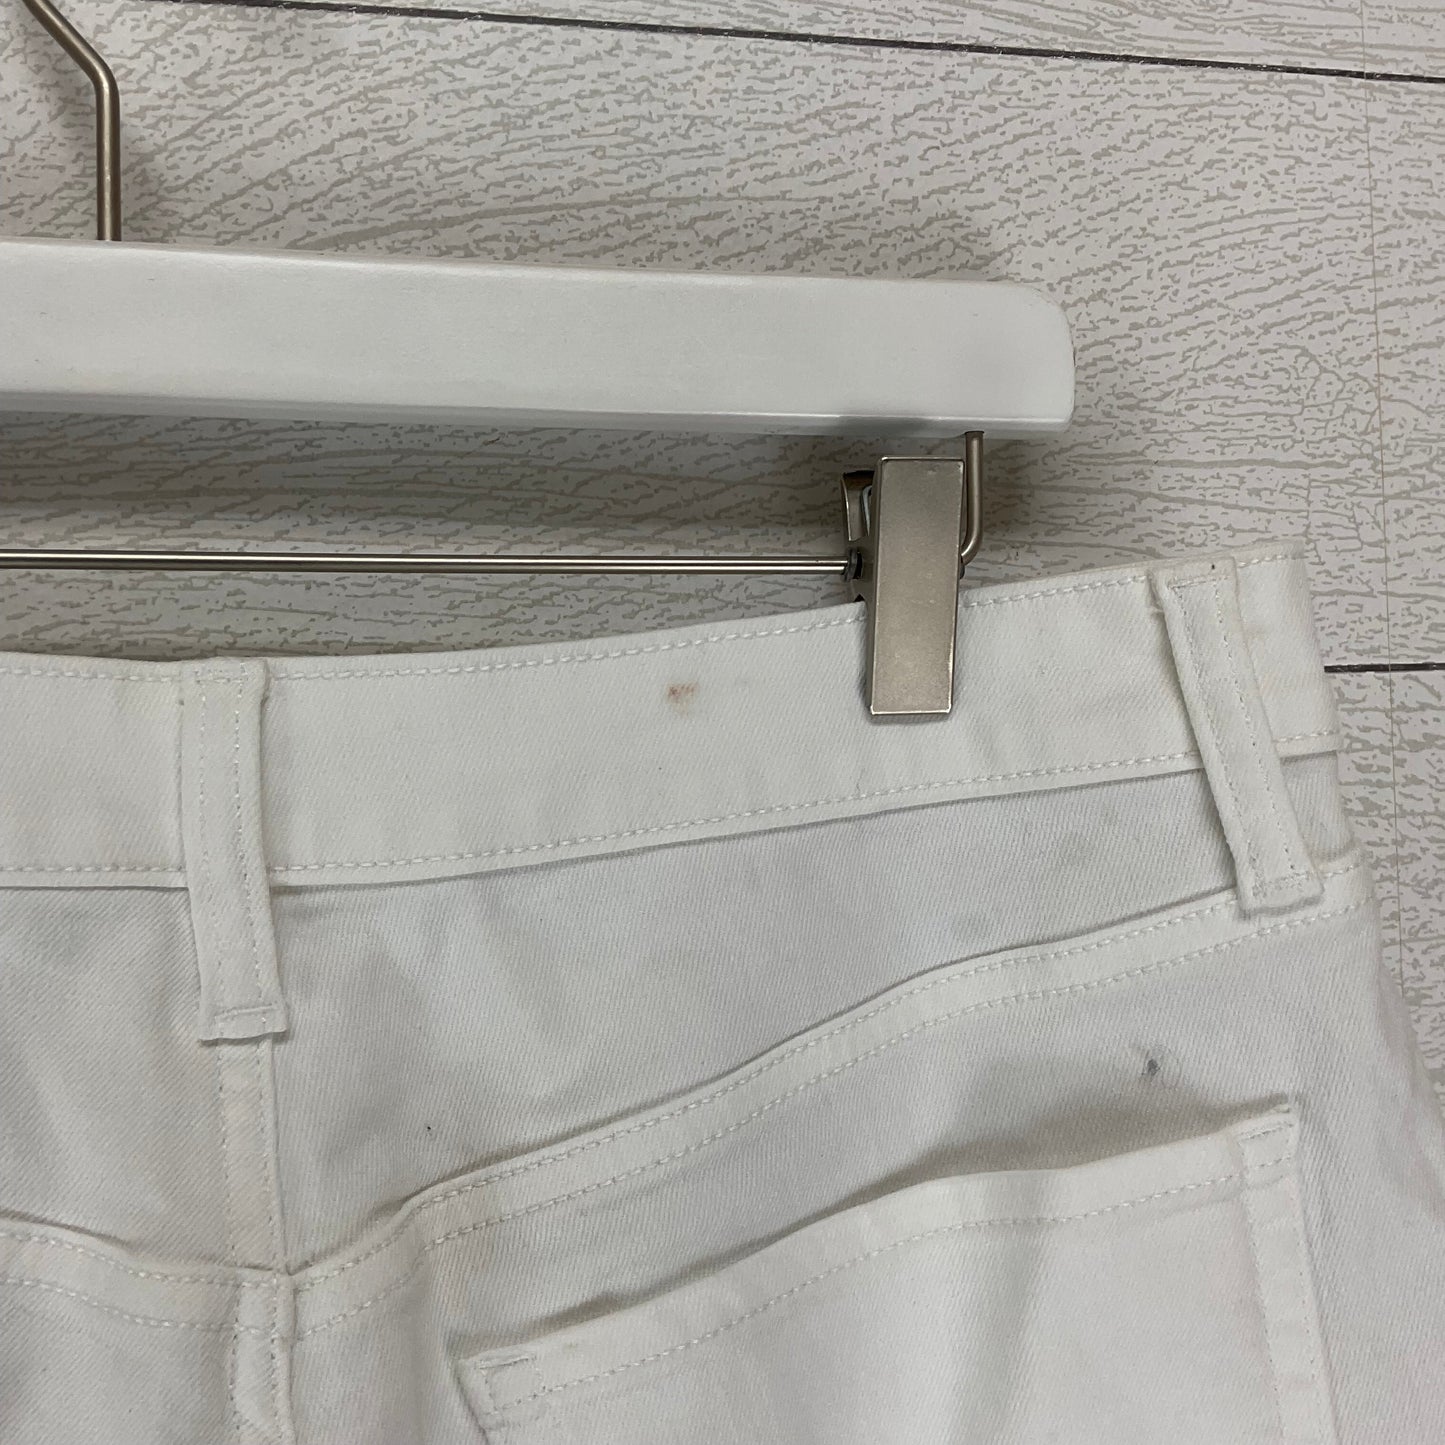 White Denim Shorts Old Navy, Size 10